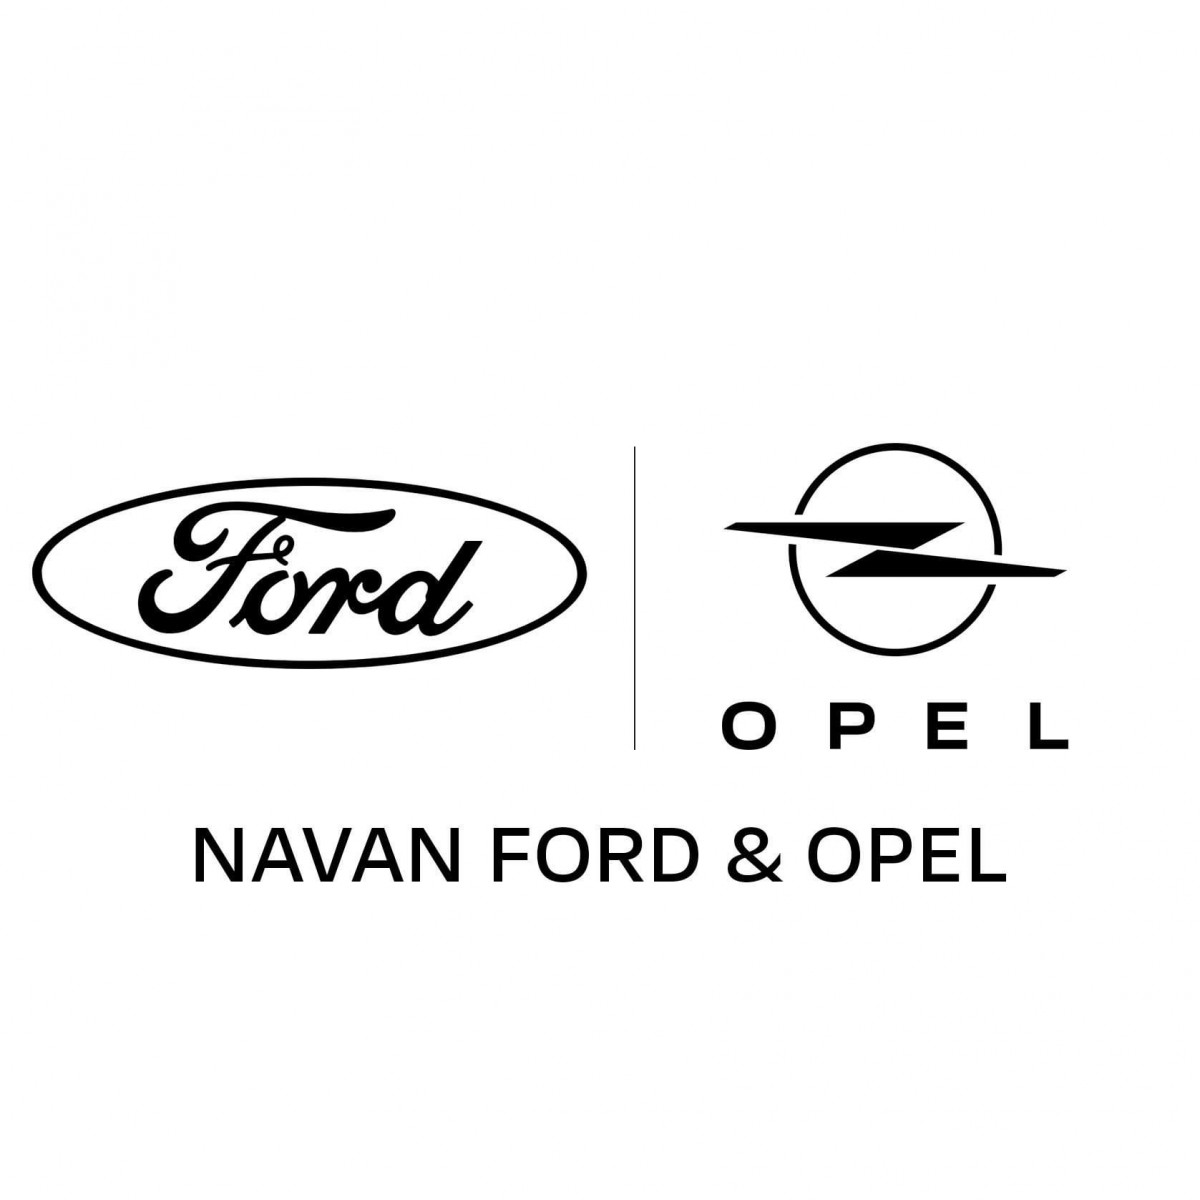 Navan Ford & Opel